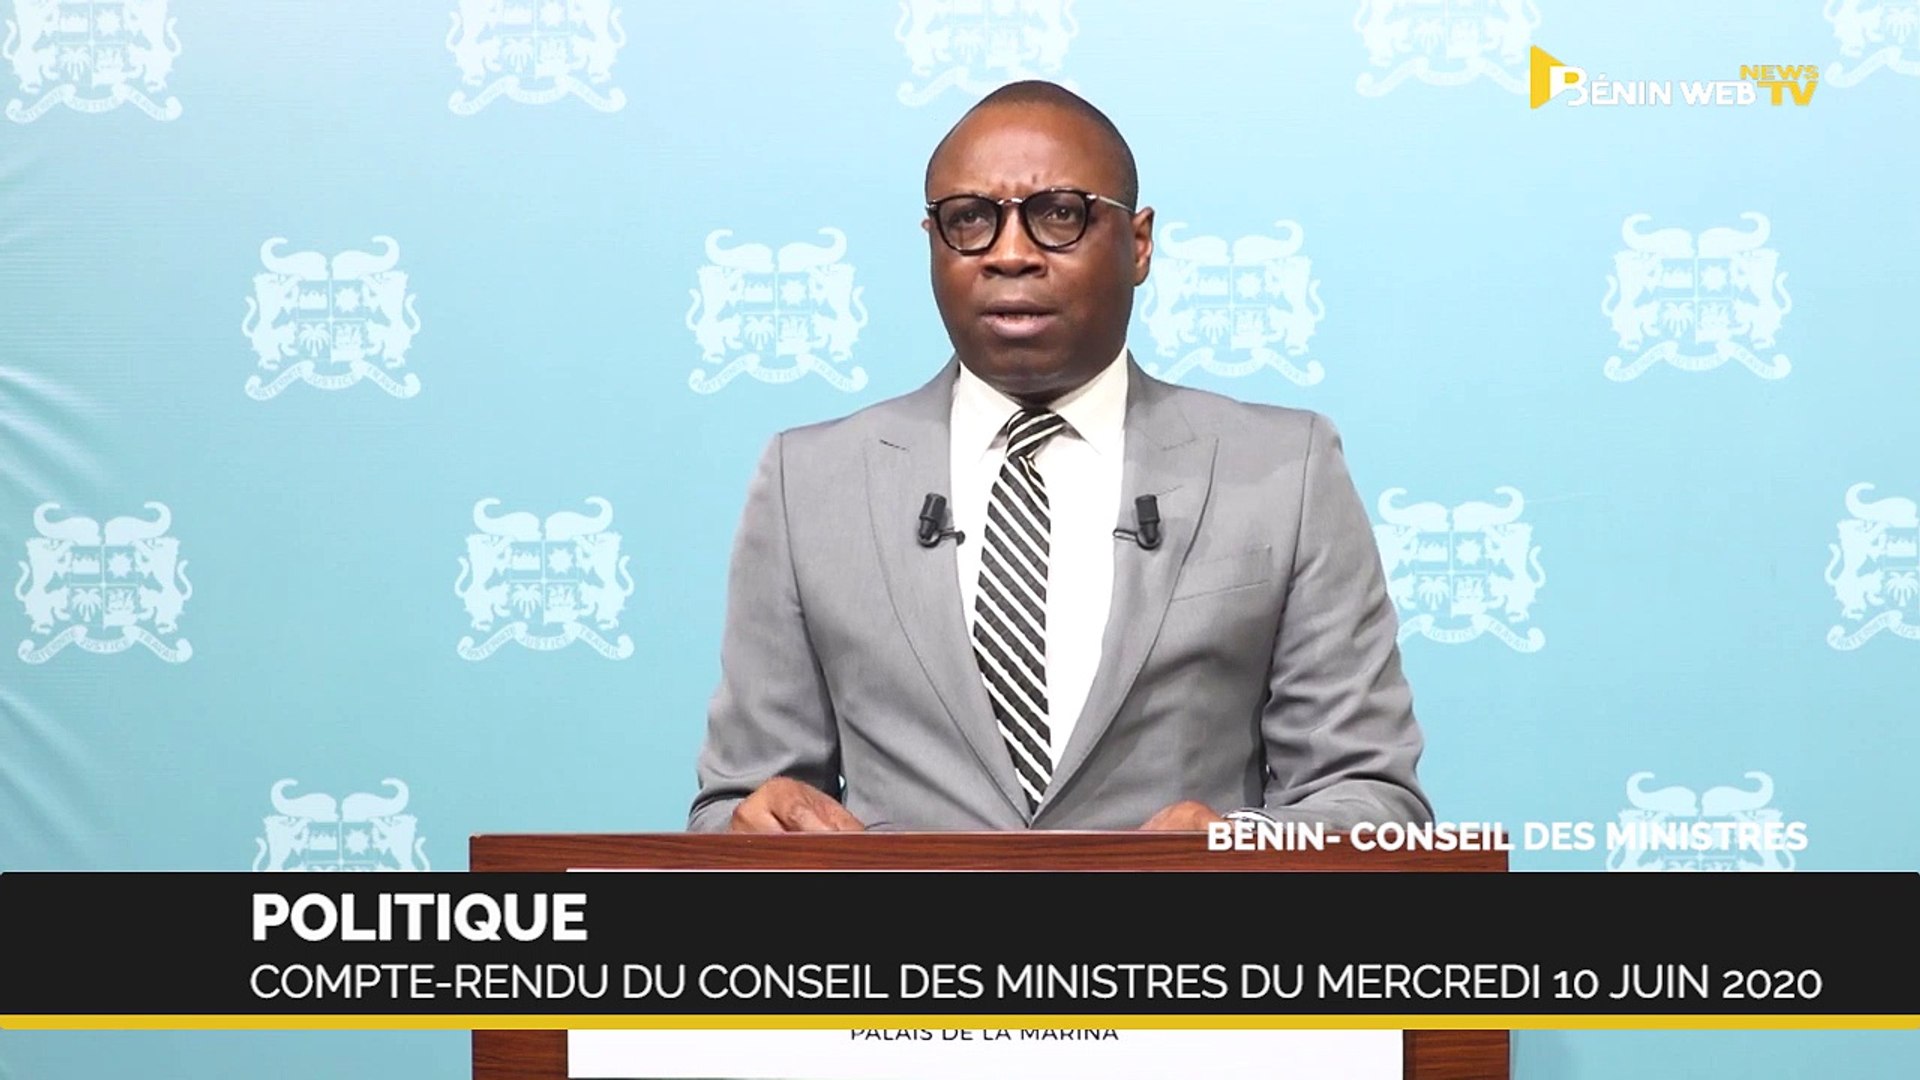 Bénin : compte-rendu du conseil des ministres du mercredi 10 juin 2020 -  Vidéo Dailymotion